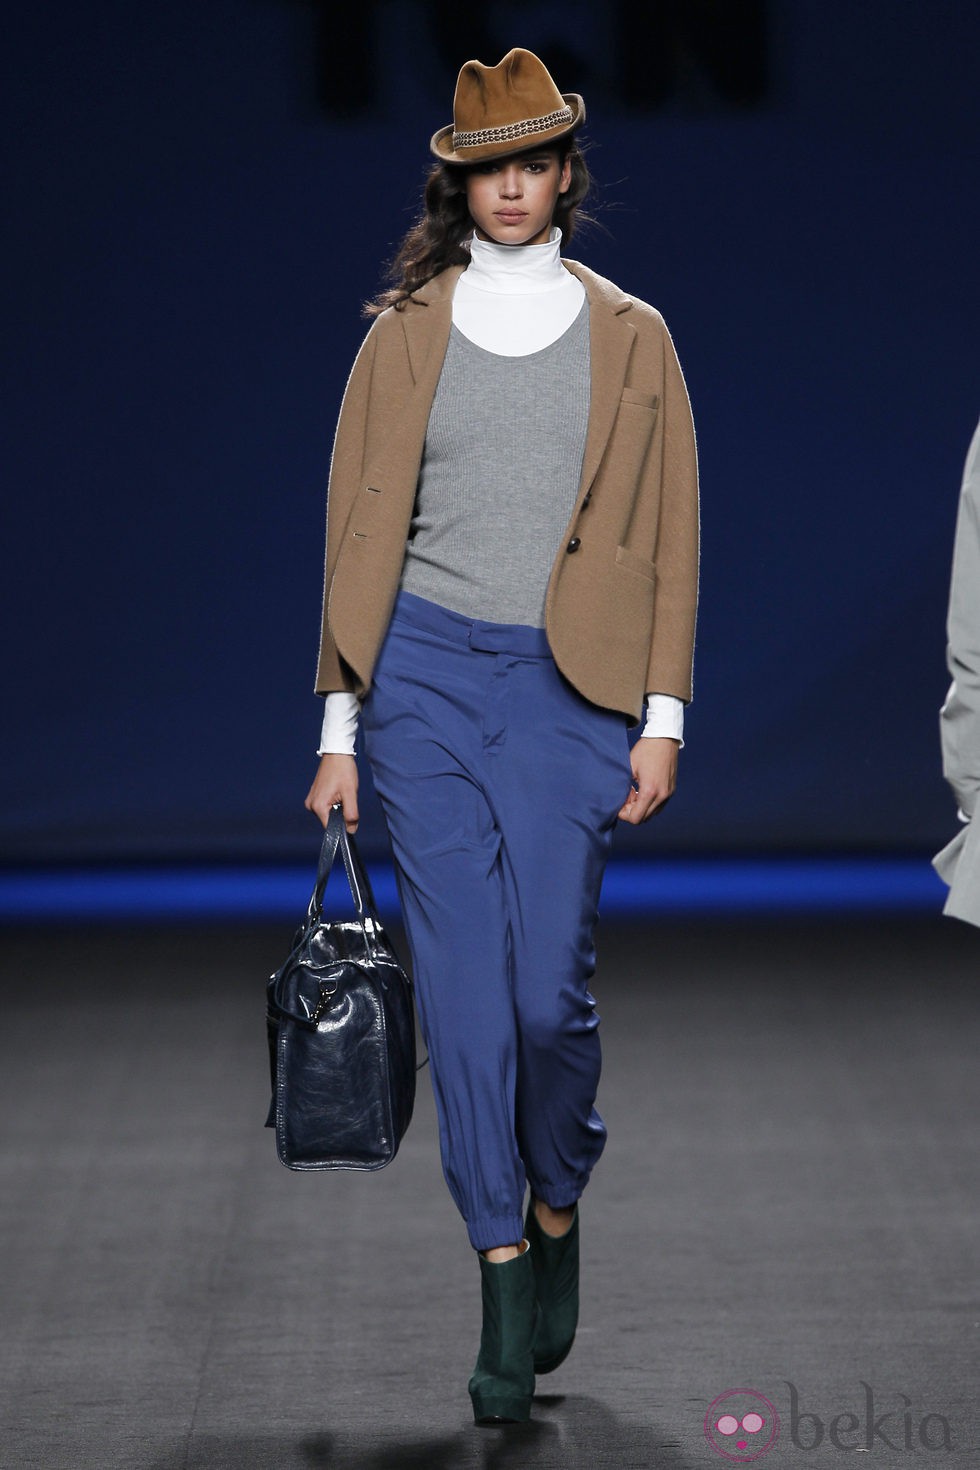 Pantalón azul con chaqueta camel de TCN en la Fashion Week Madrid